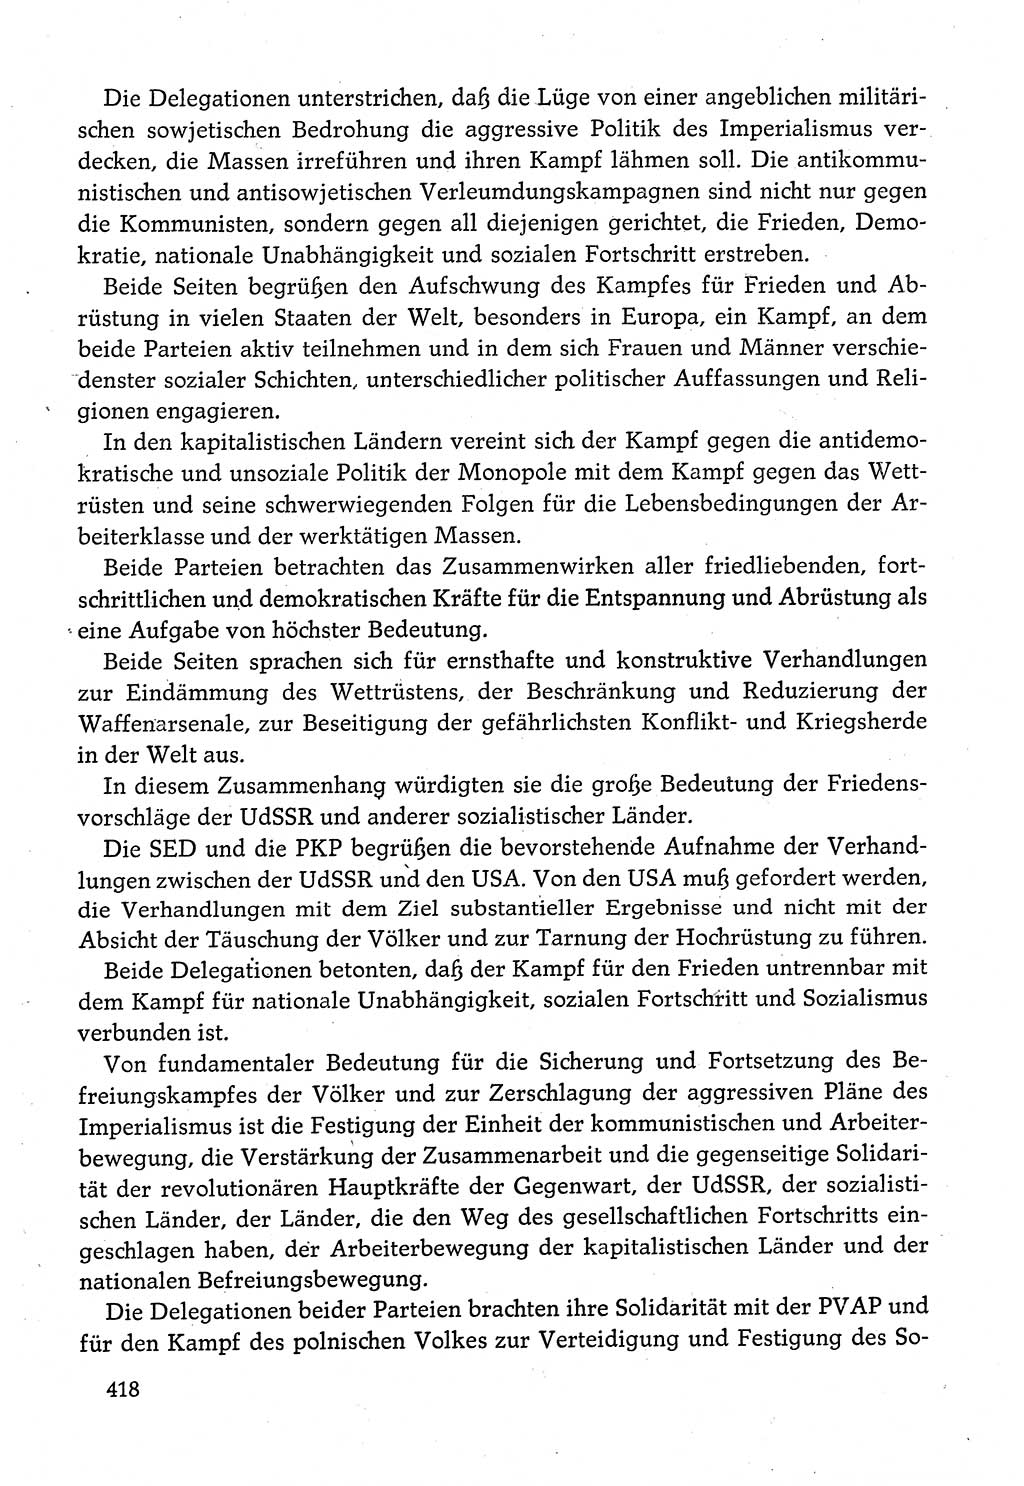 Dokumente der Sozialistischen Einheitspartei Deutschlands (SED) [Deutsche Demokratische Republik (DDR)] 1980-1981, Seite 418 (Dok. SED DDR 1980-1981, S. 418)